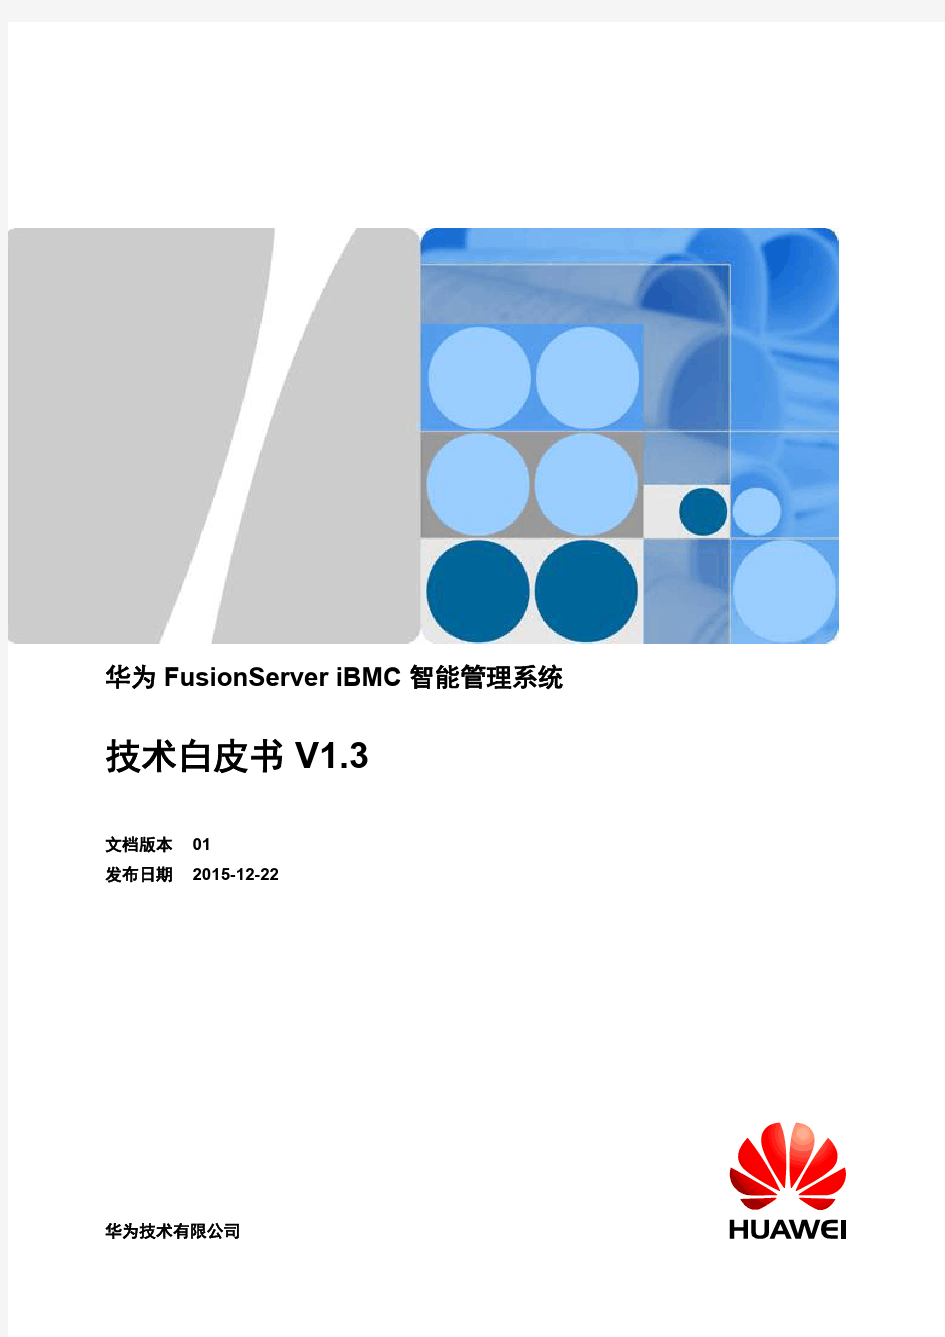 华为FusionServer iBMC 智能管理系统技术白皮书